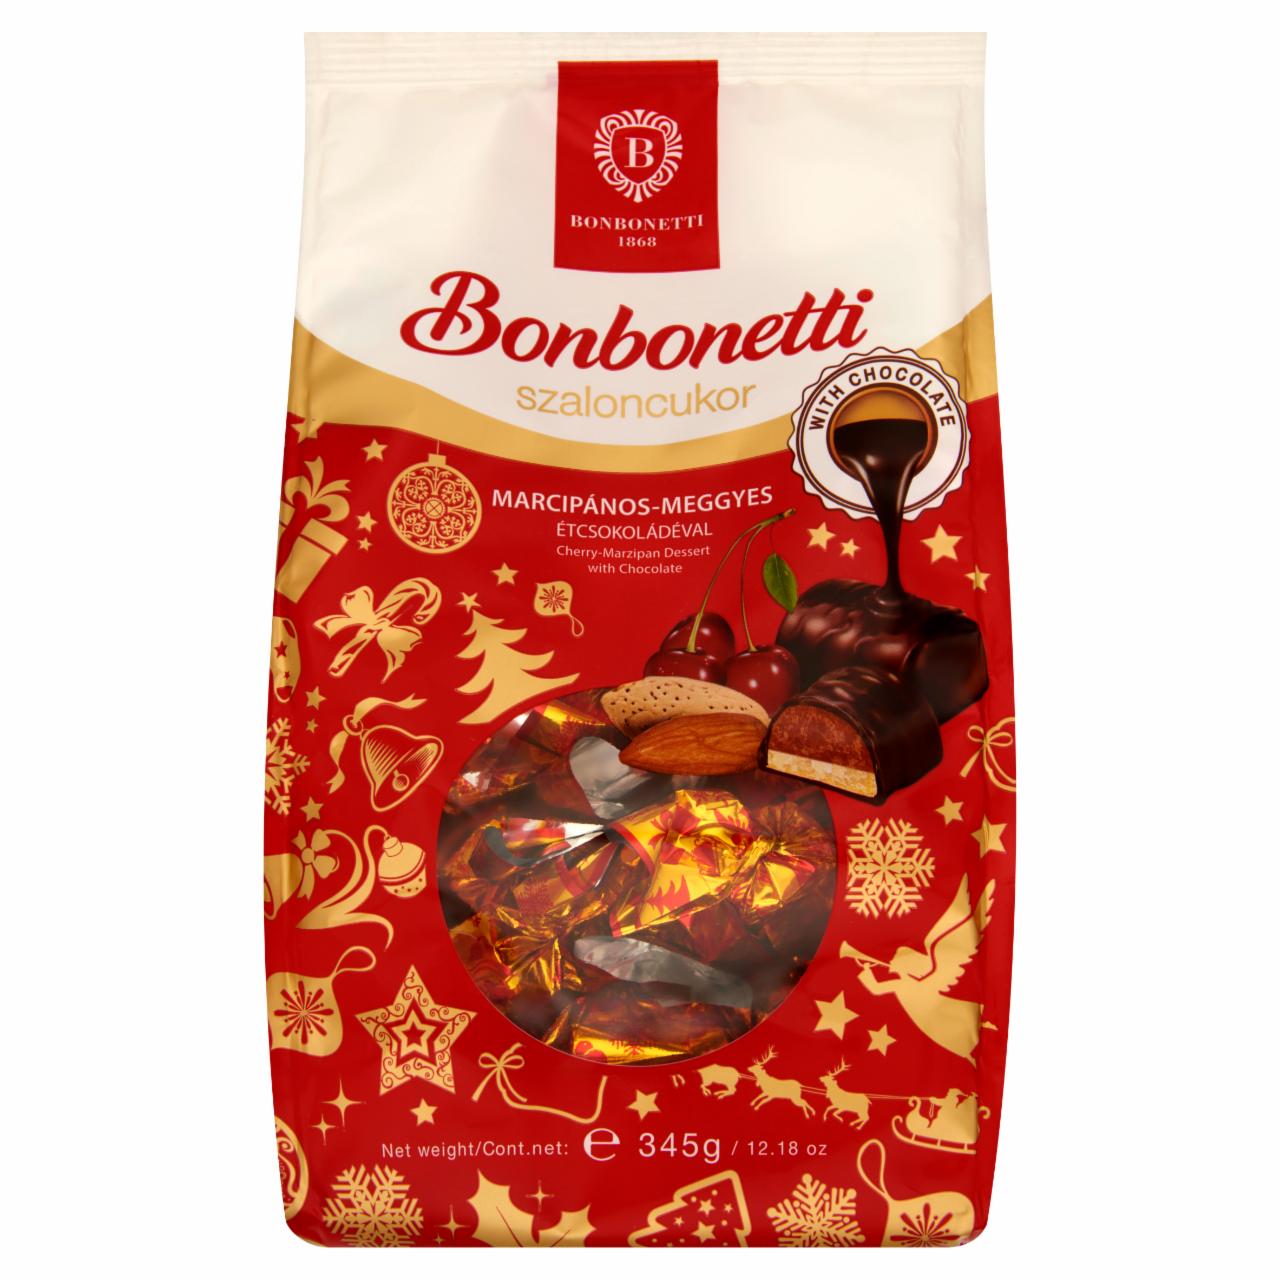 Képek - Bonbonetti étcsokoládéval mártott meggy-marcipán ízesítésű szaloncukor 345 g